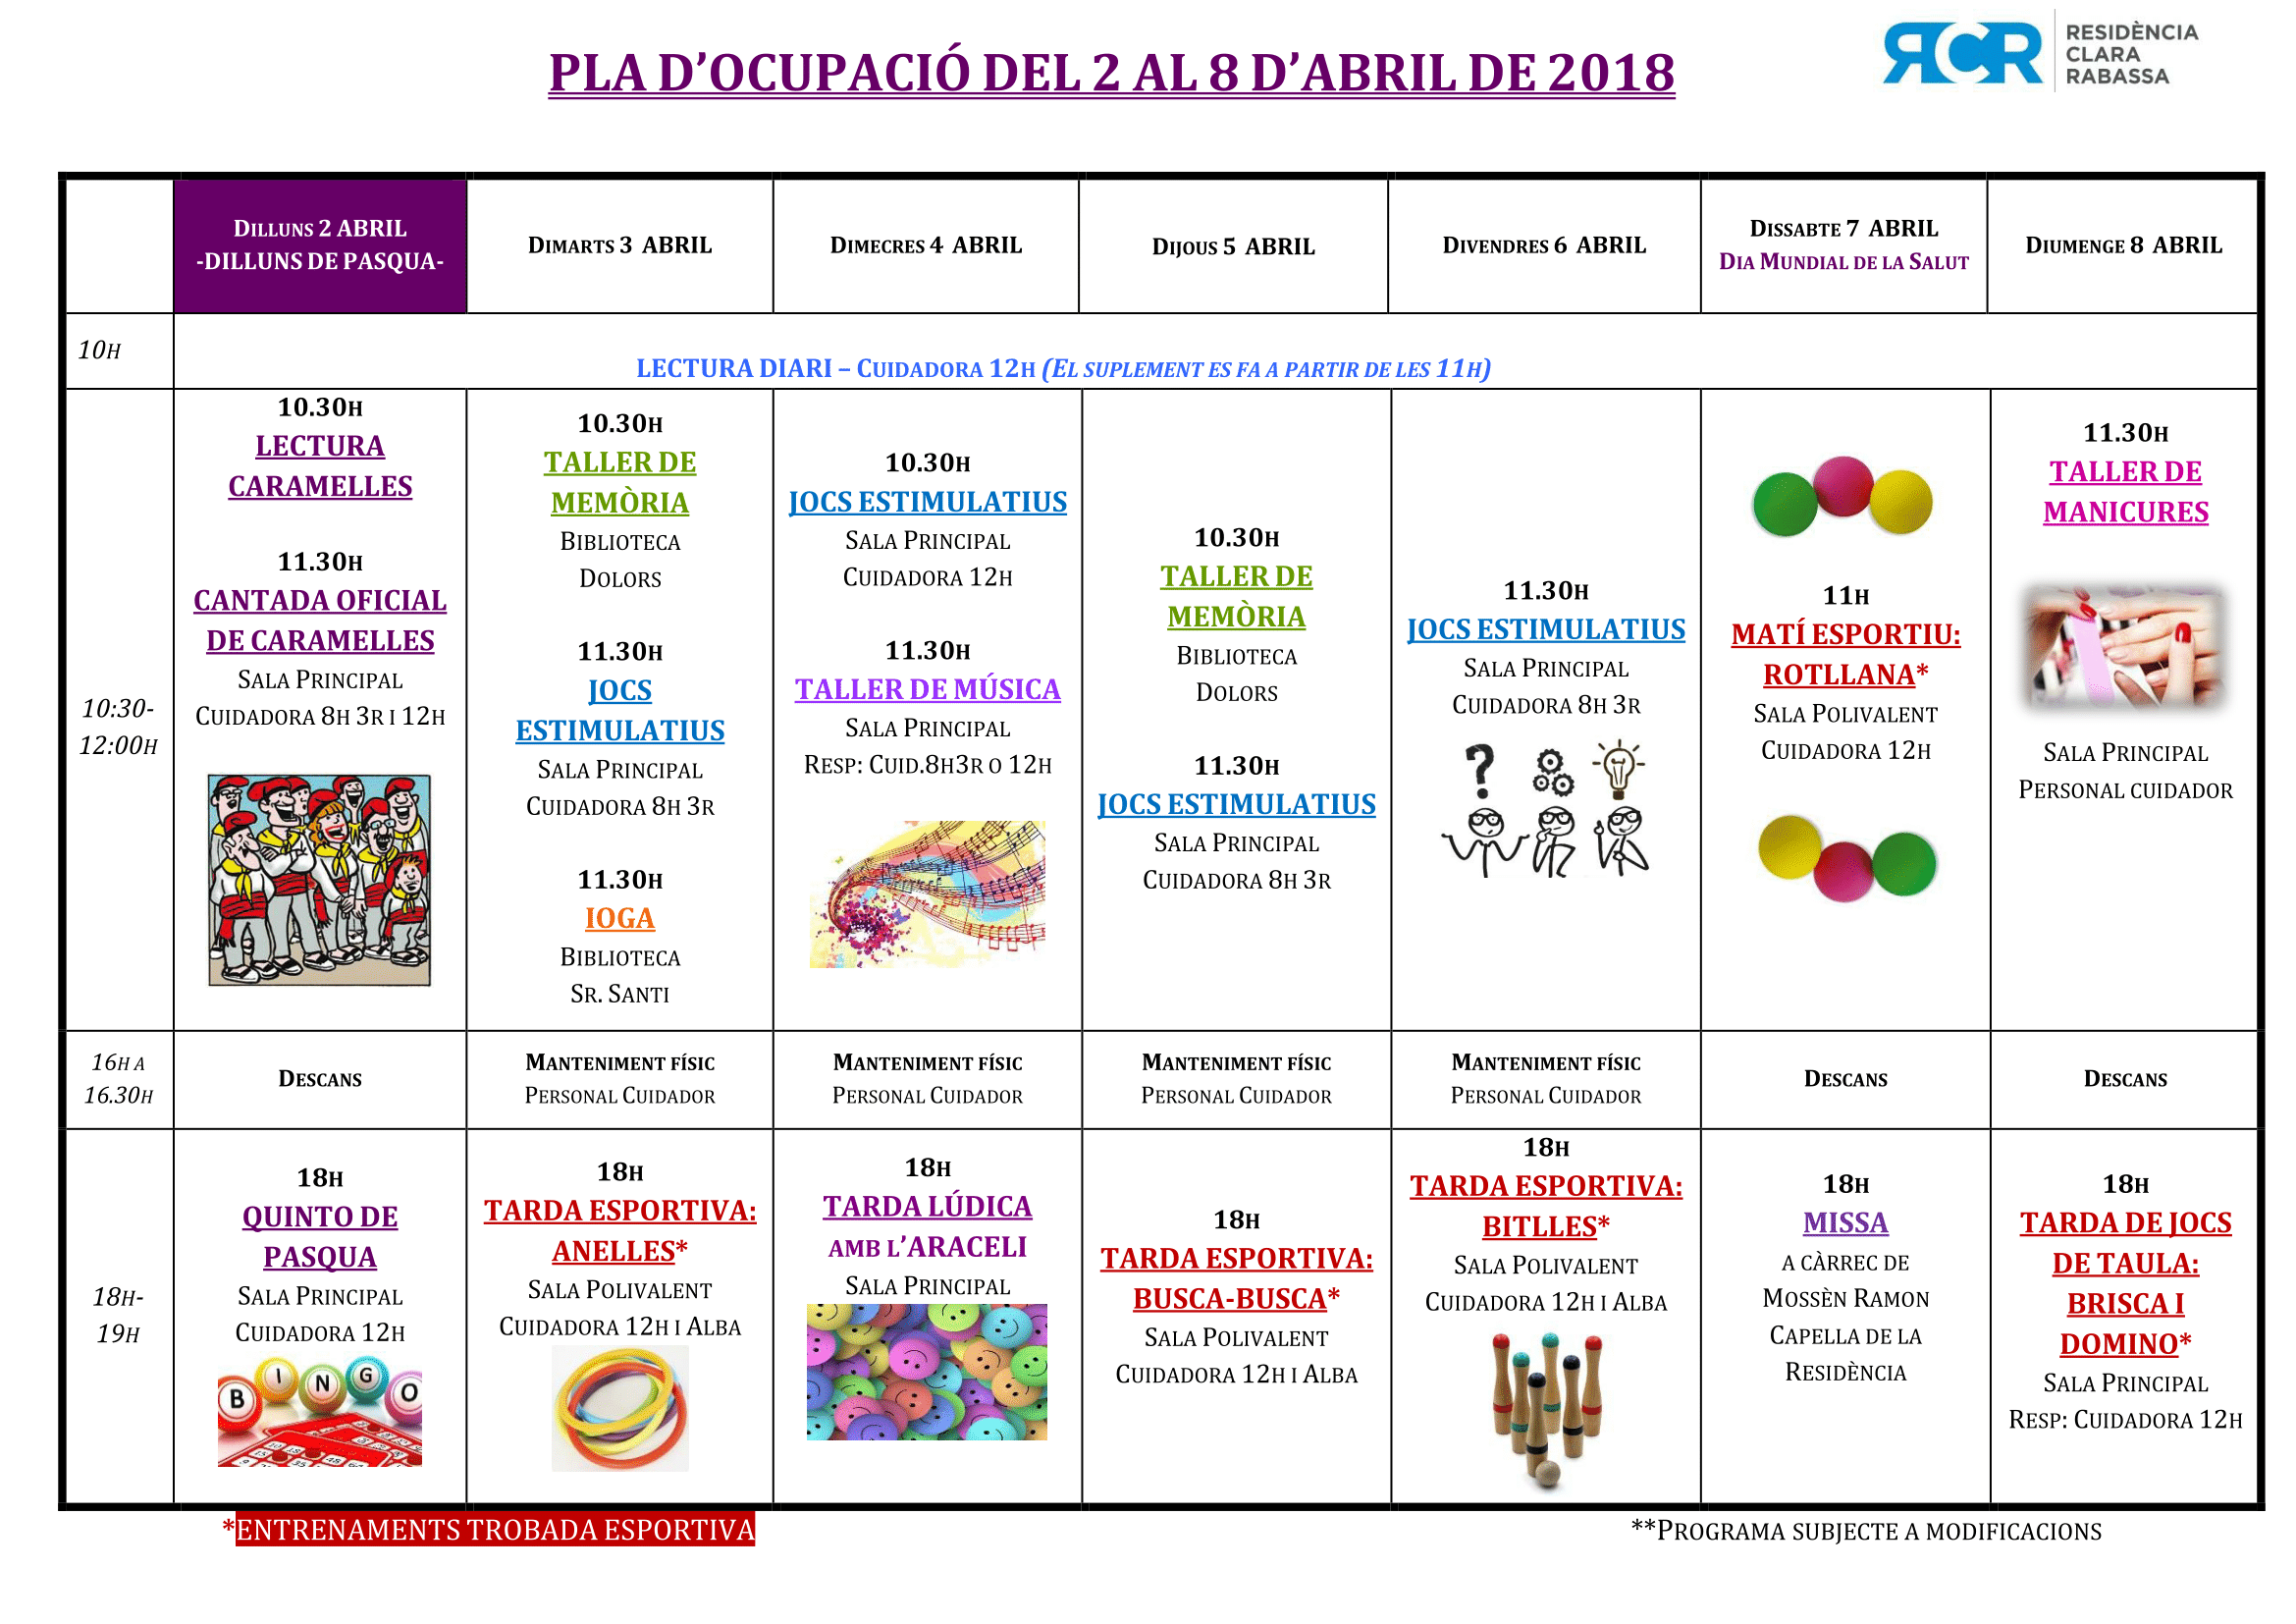 PLA D’OCUPACIÓ DEL 2 AL 8 D’ABRIL DE 2018